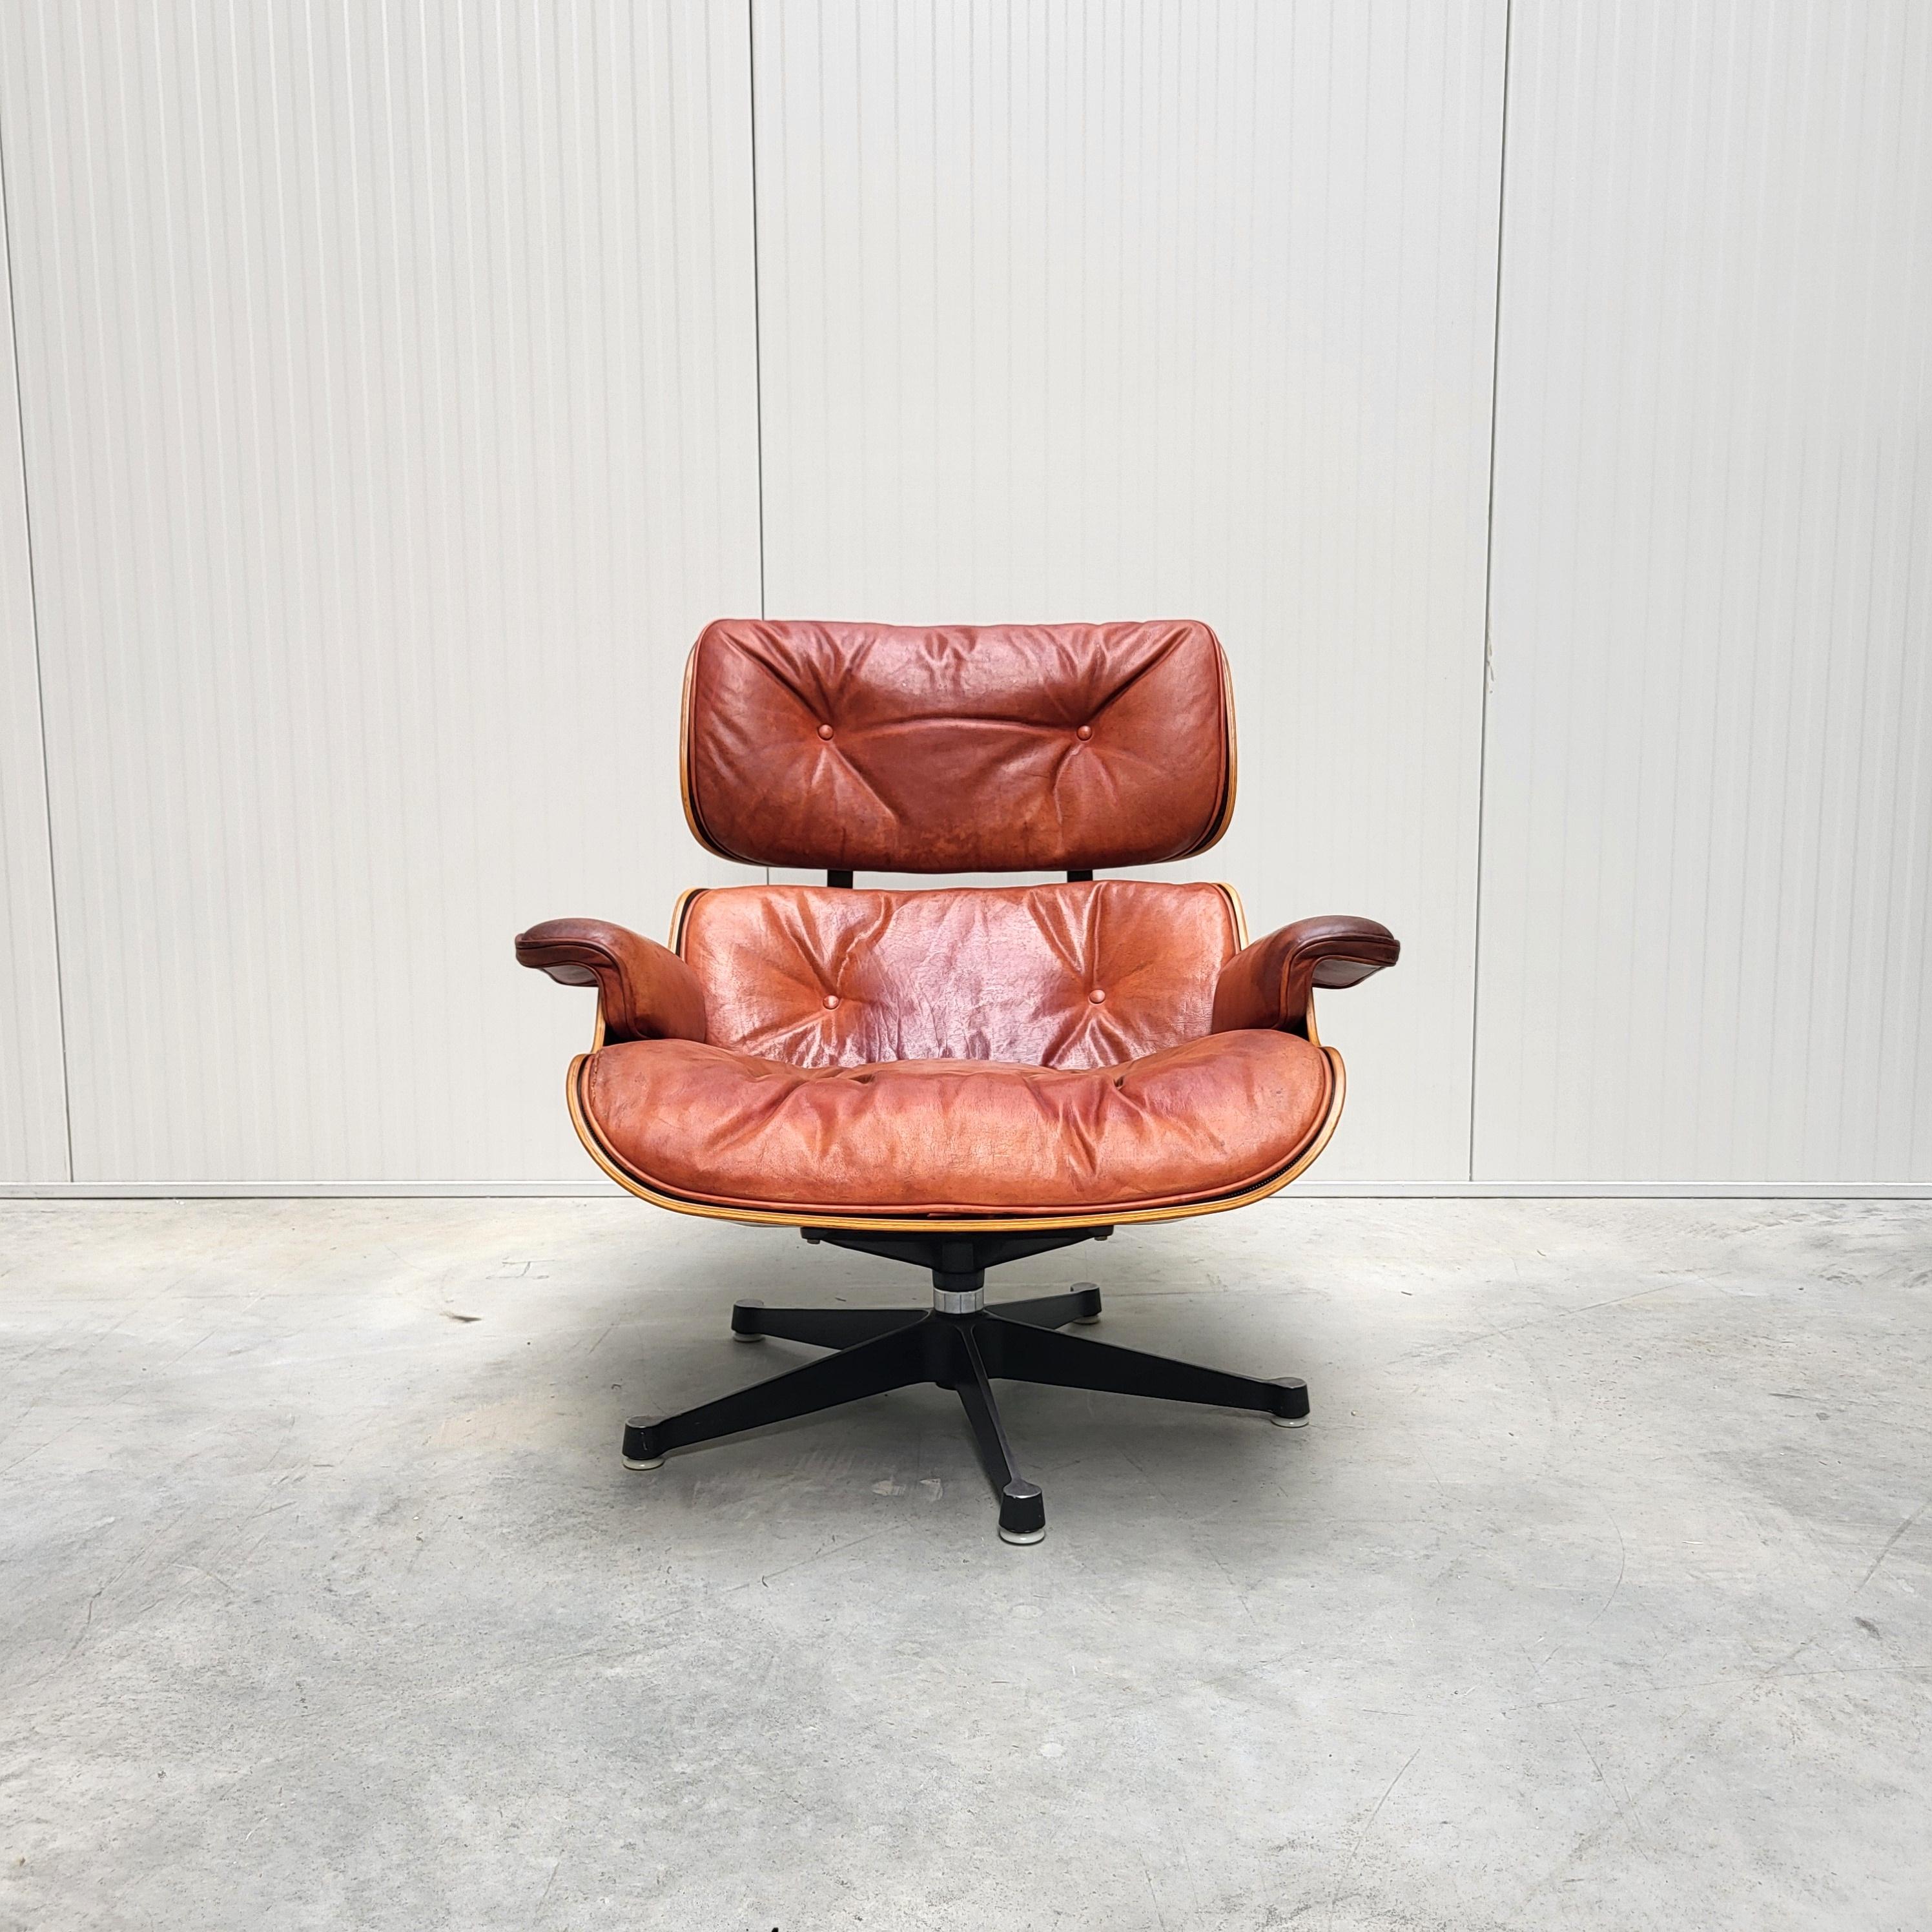 Cette chaise longue rare a été conçue par Charles & Ray Eames et a été produite par Herman Miller au début des années 1970. Il s'agit de l'une des premières chaises longues produites en Europe sous la licence de Vitra.

Il s'agit d'un exemple